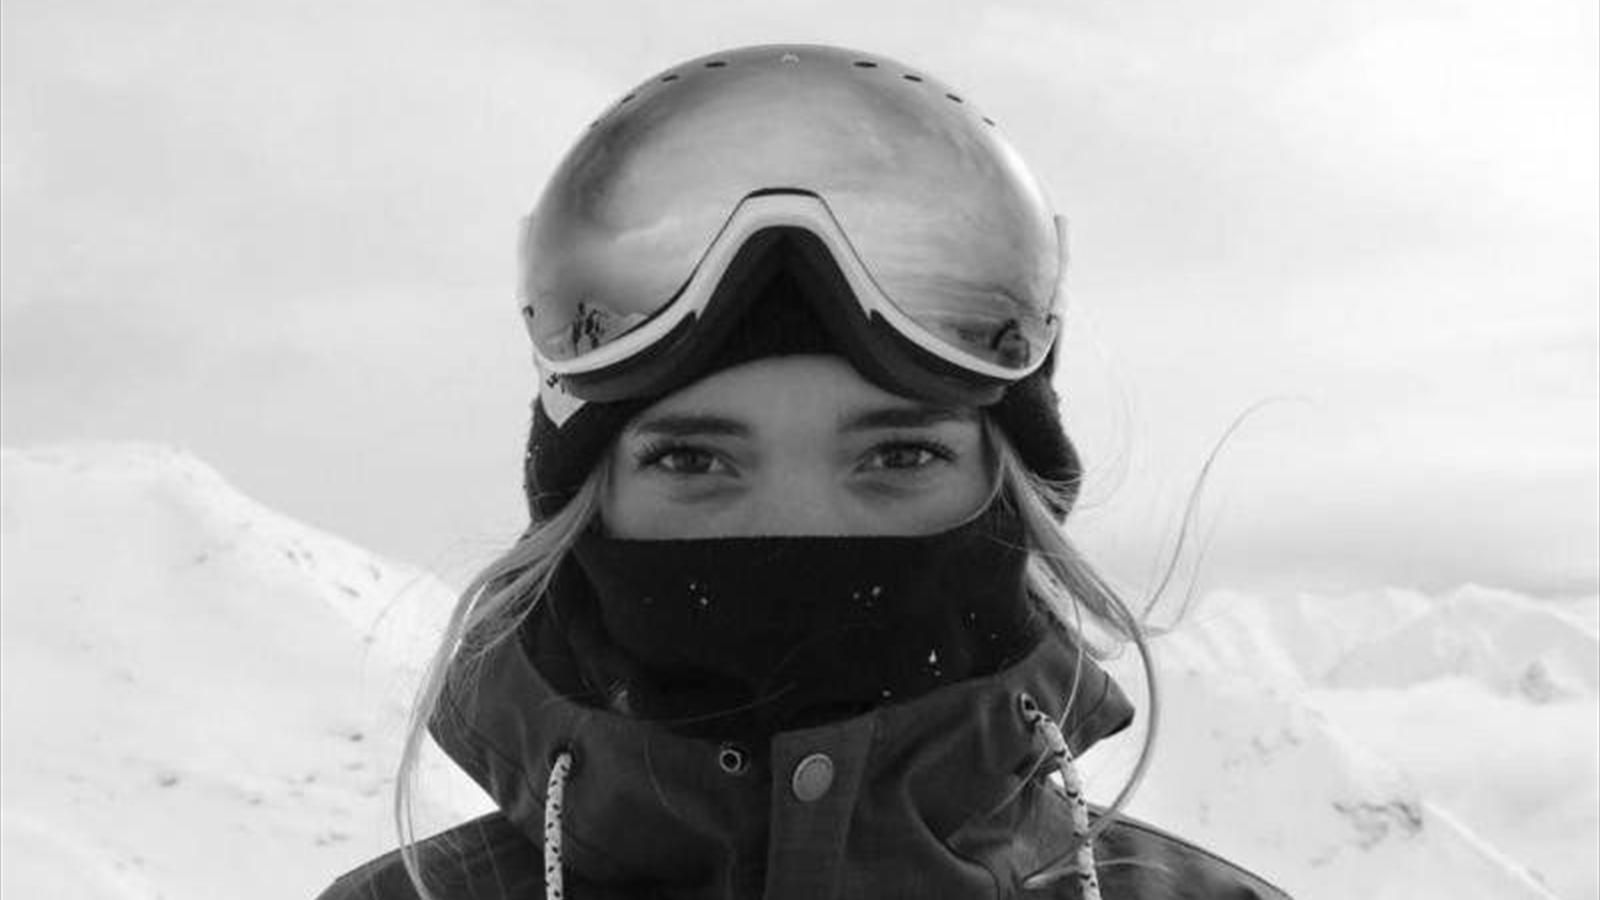 Ellie Soutter, British, snowboarder dead